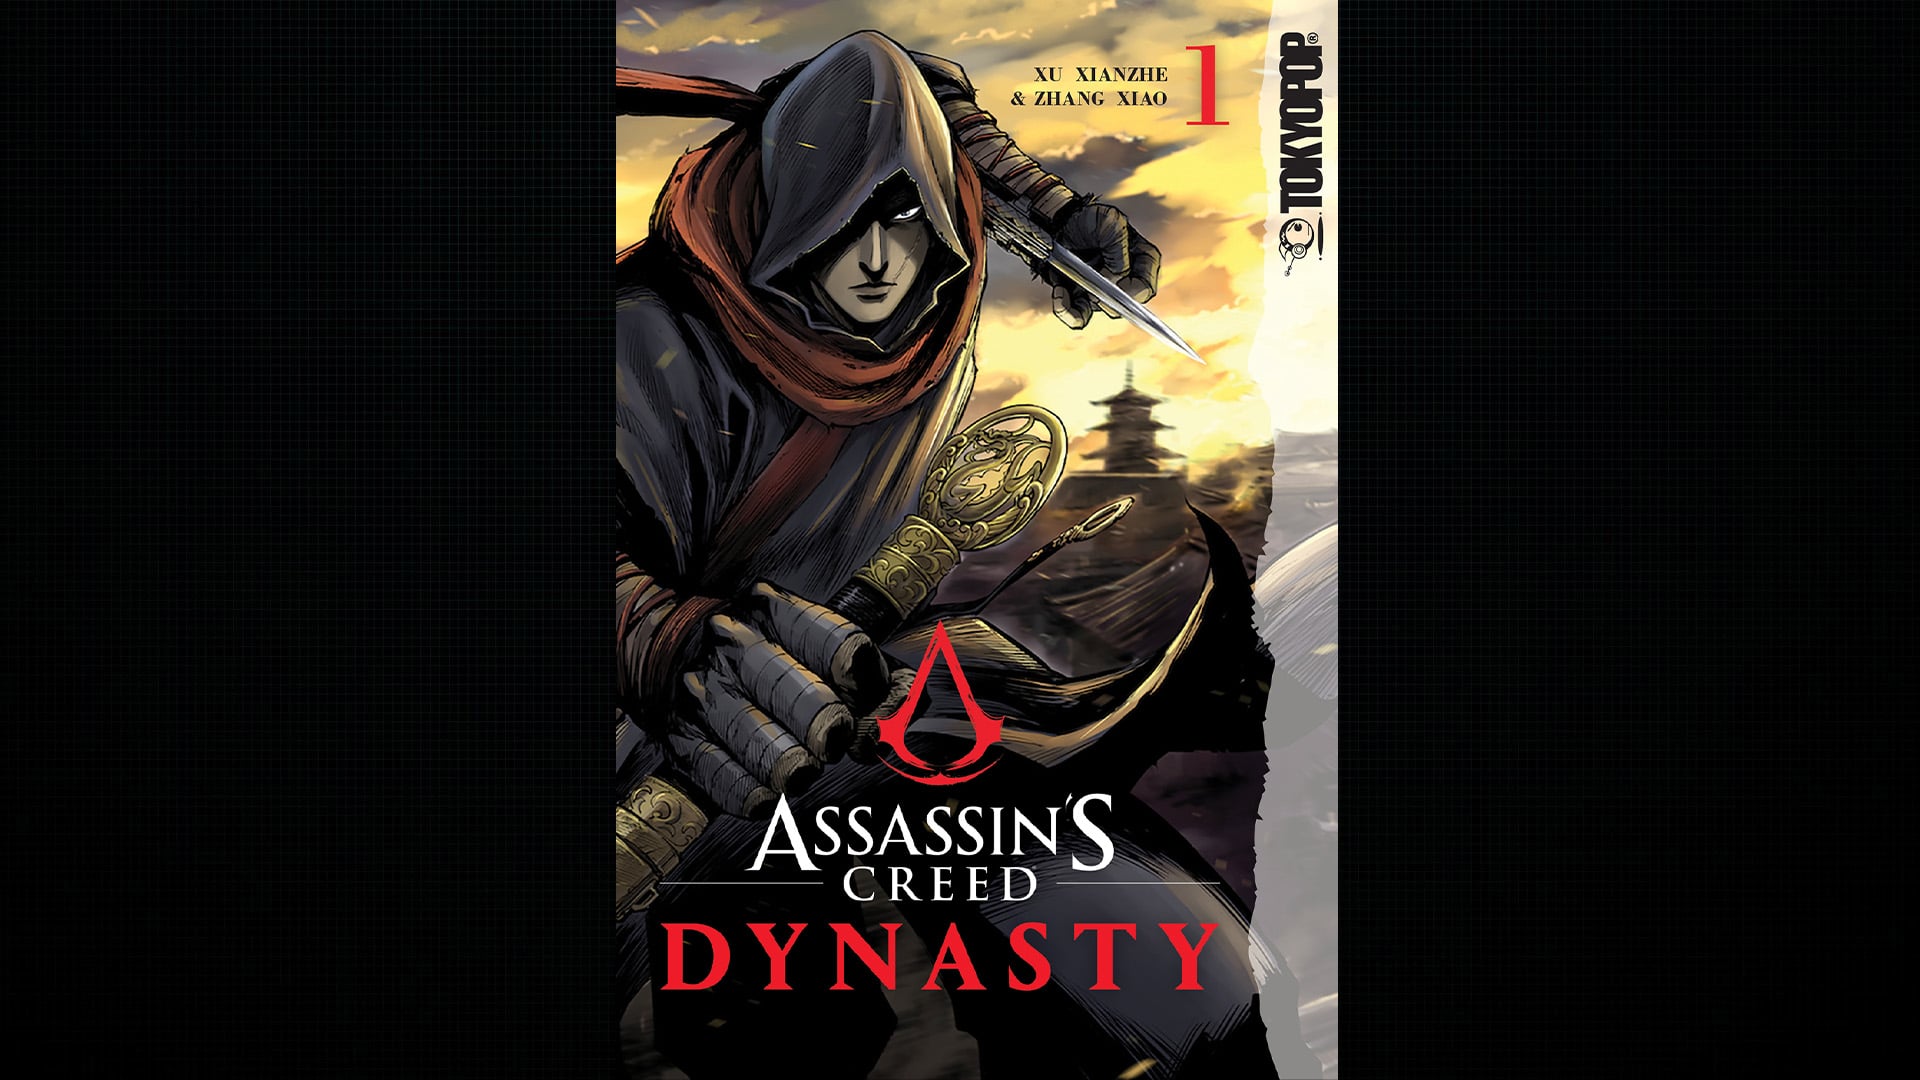 El Cómic Digital Assassin's Creed Dynasty Alcanza Los Mil Millones de Visitas, GamersRD